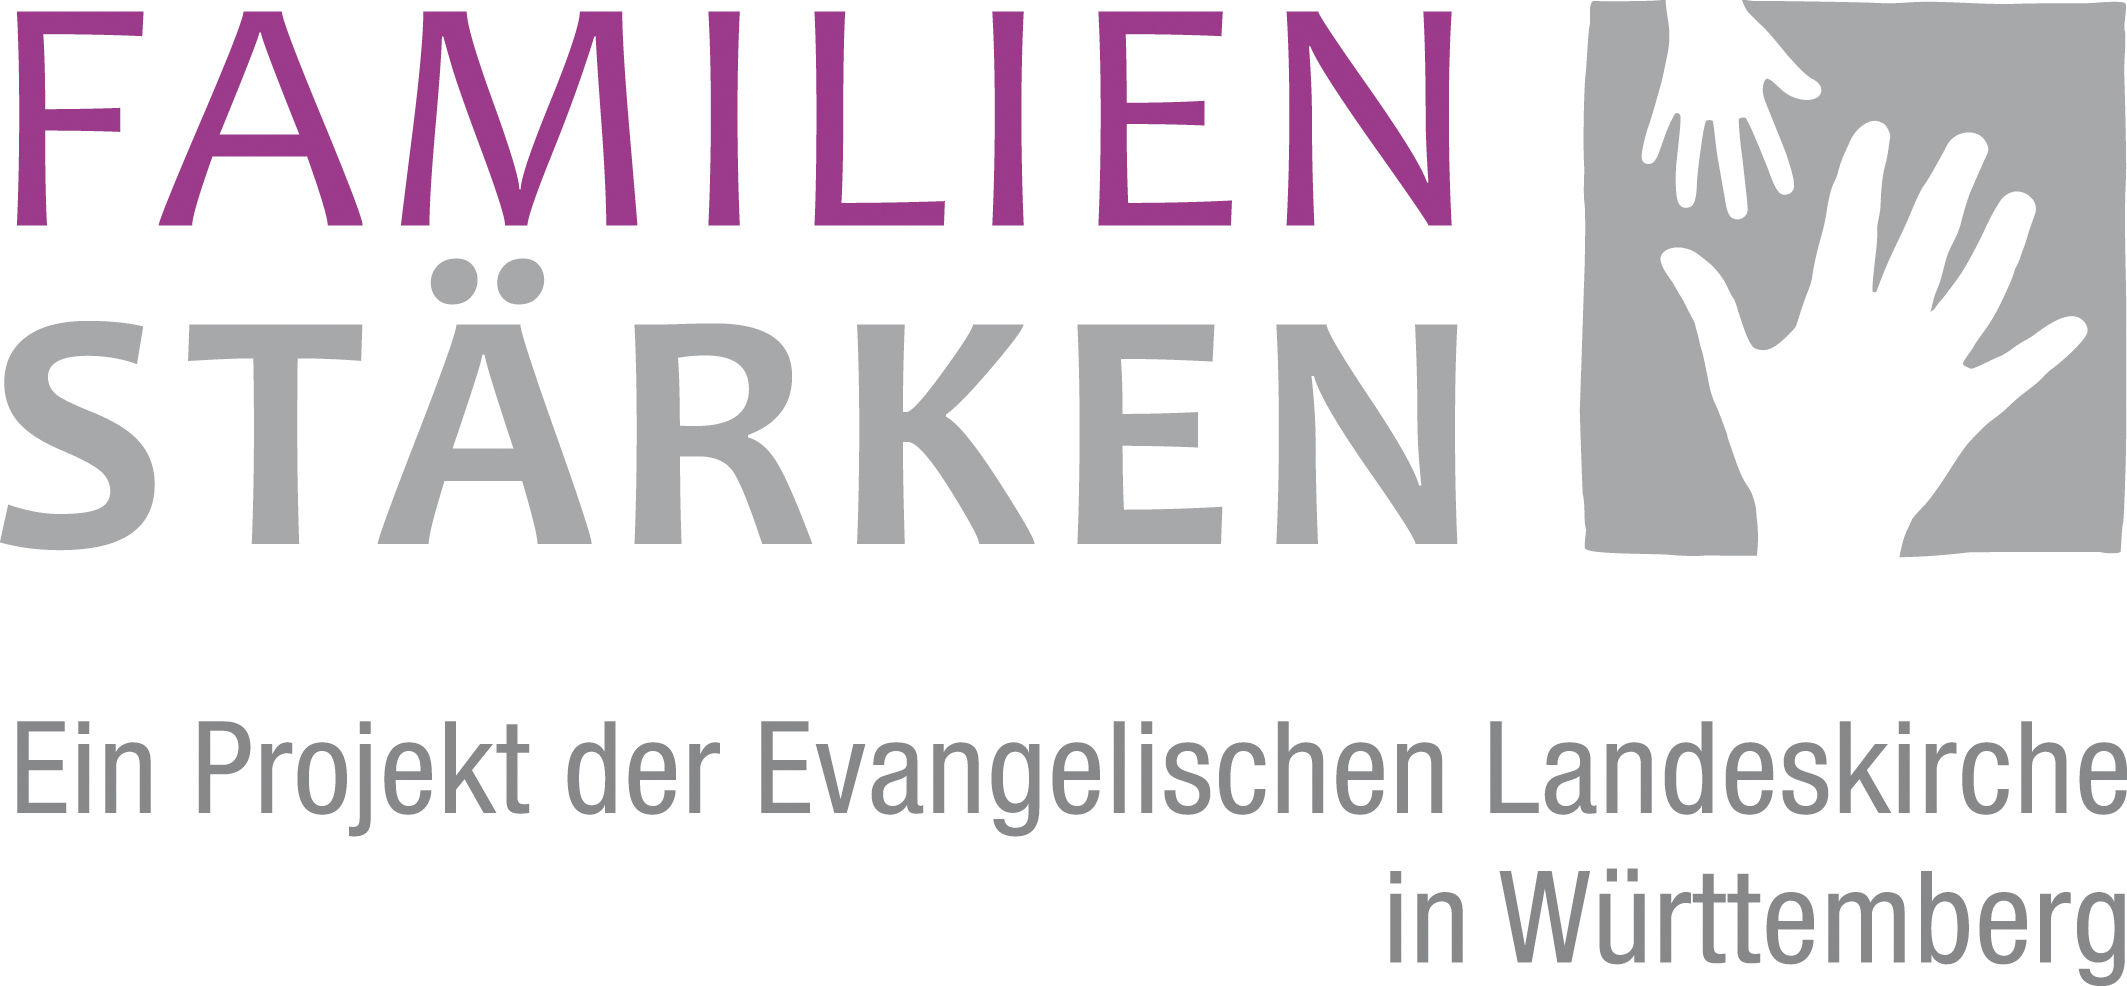 FamilienStaerken Logo2018 final RGB Zusatz